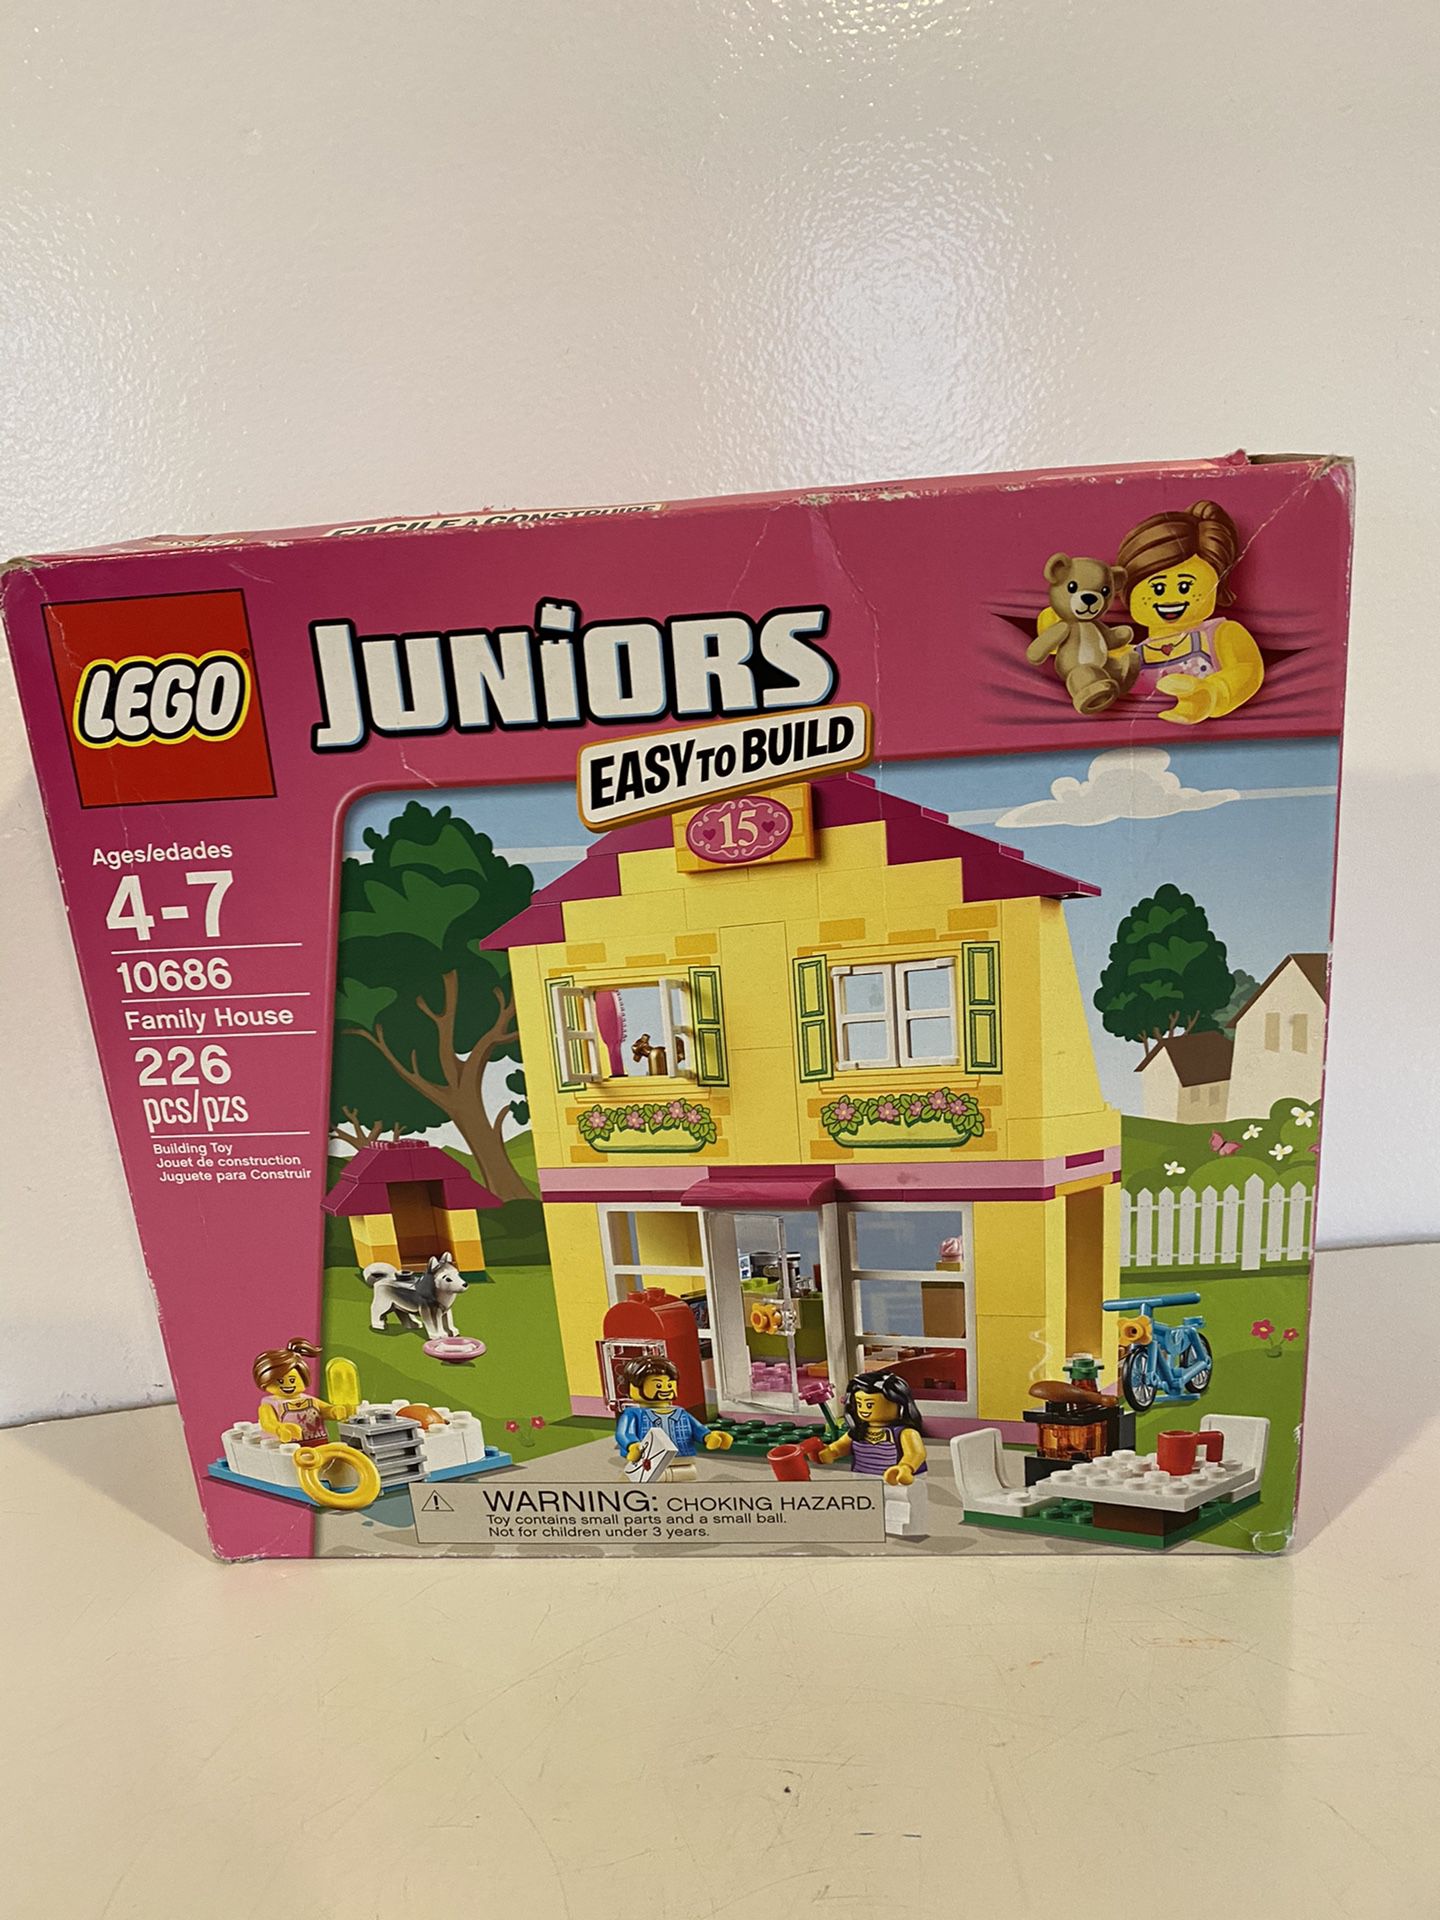 Brand new LEGO Juniors 10686 Family House Building Kit